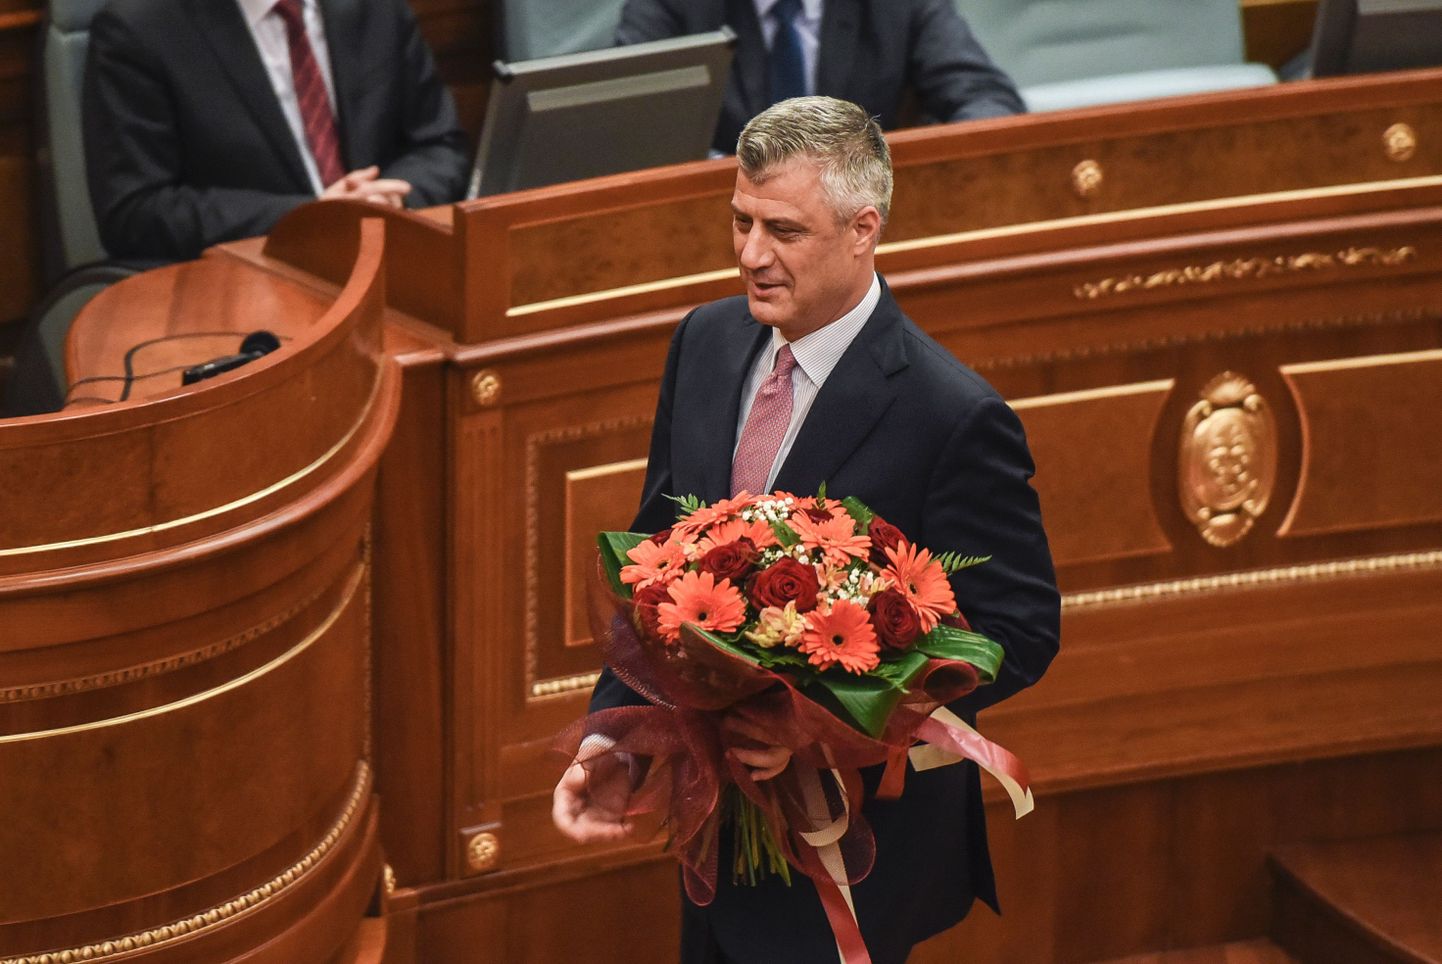 Kosovo presidendiks saanud Hashim Thaçi